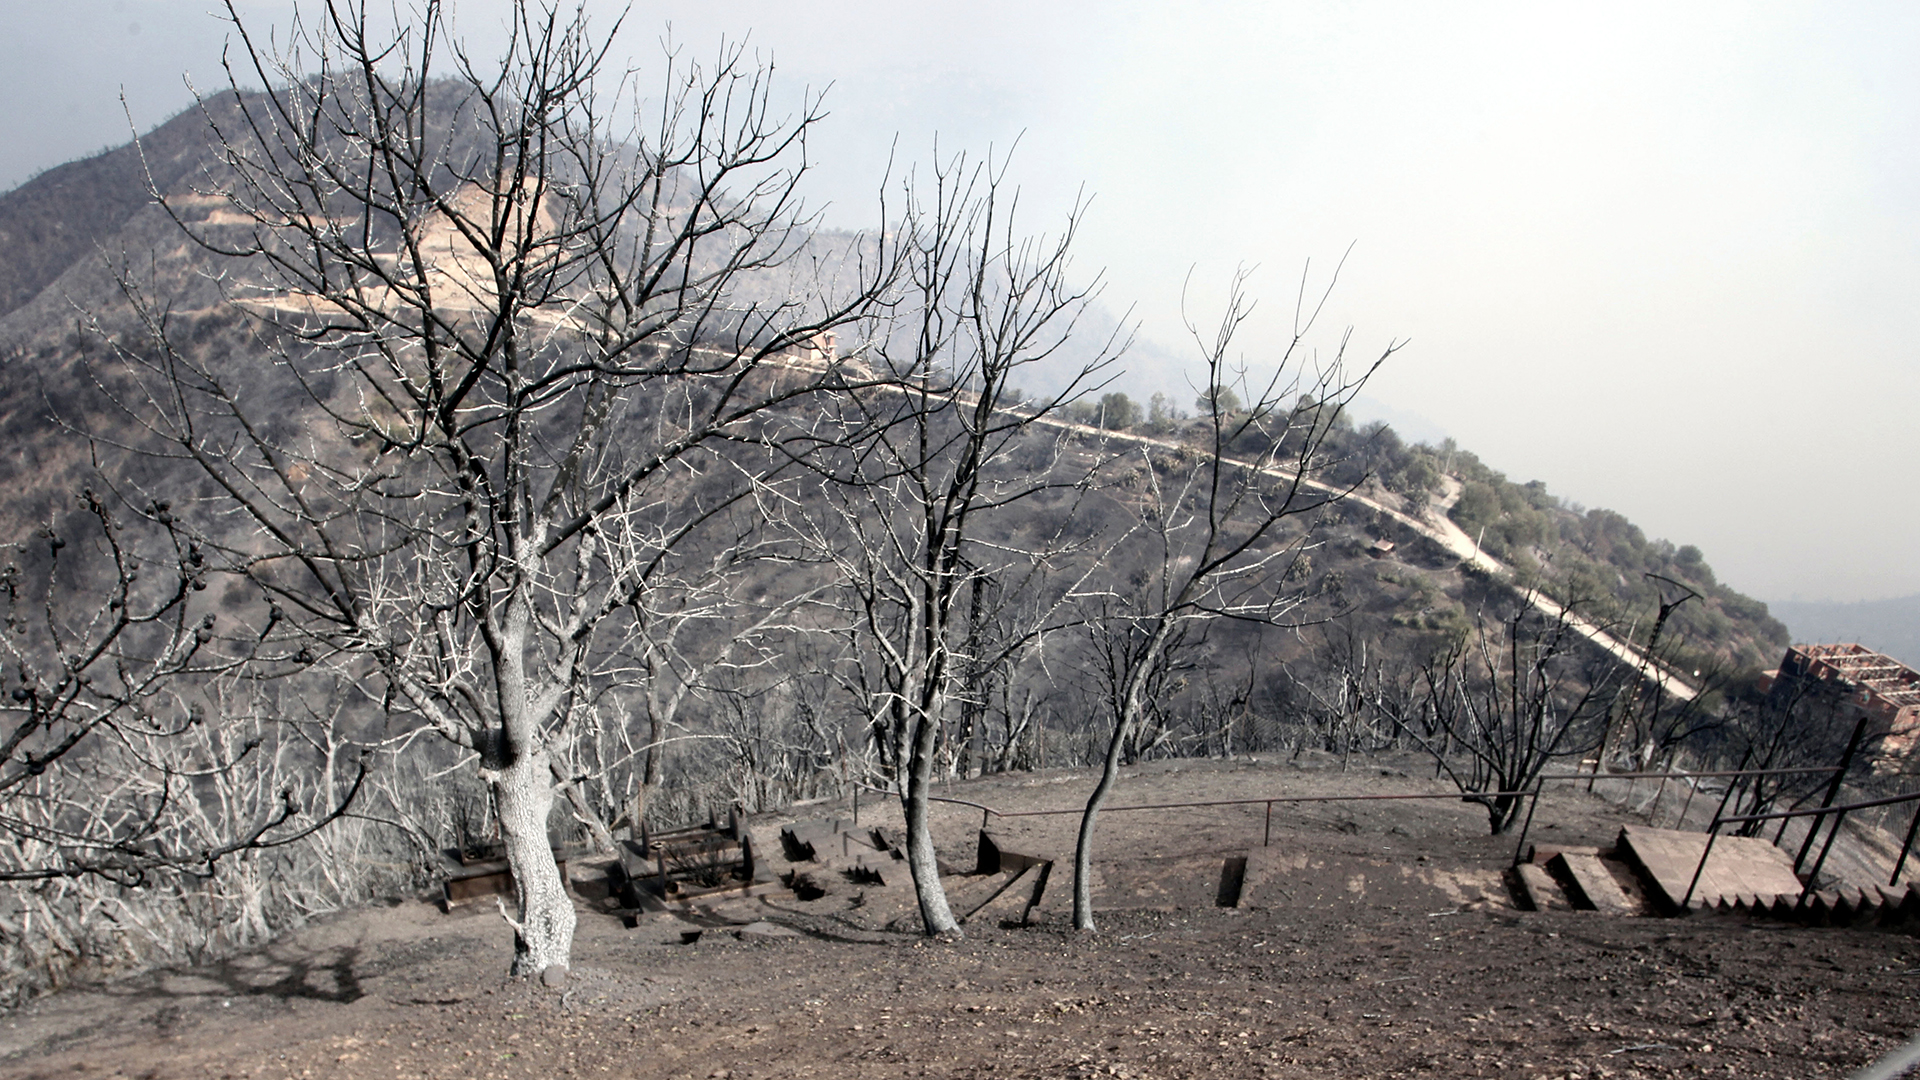 Blick auf verbrannte Bäume, etwa 100 km östlich von Algier. | dpa